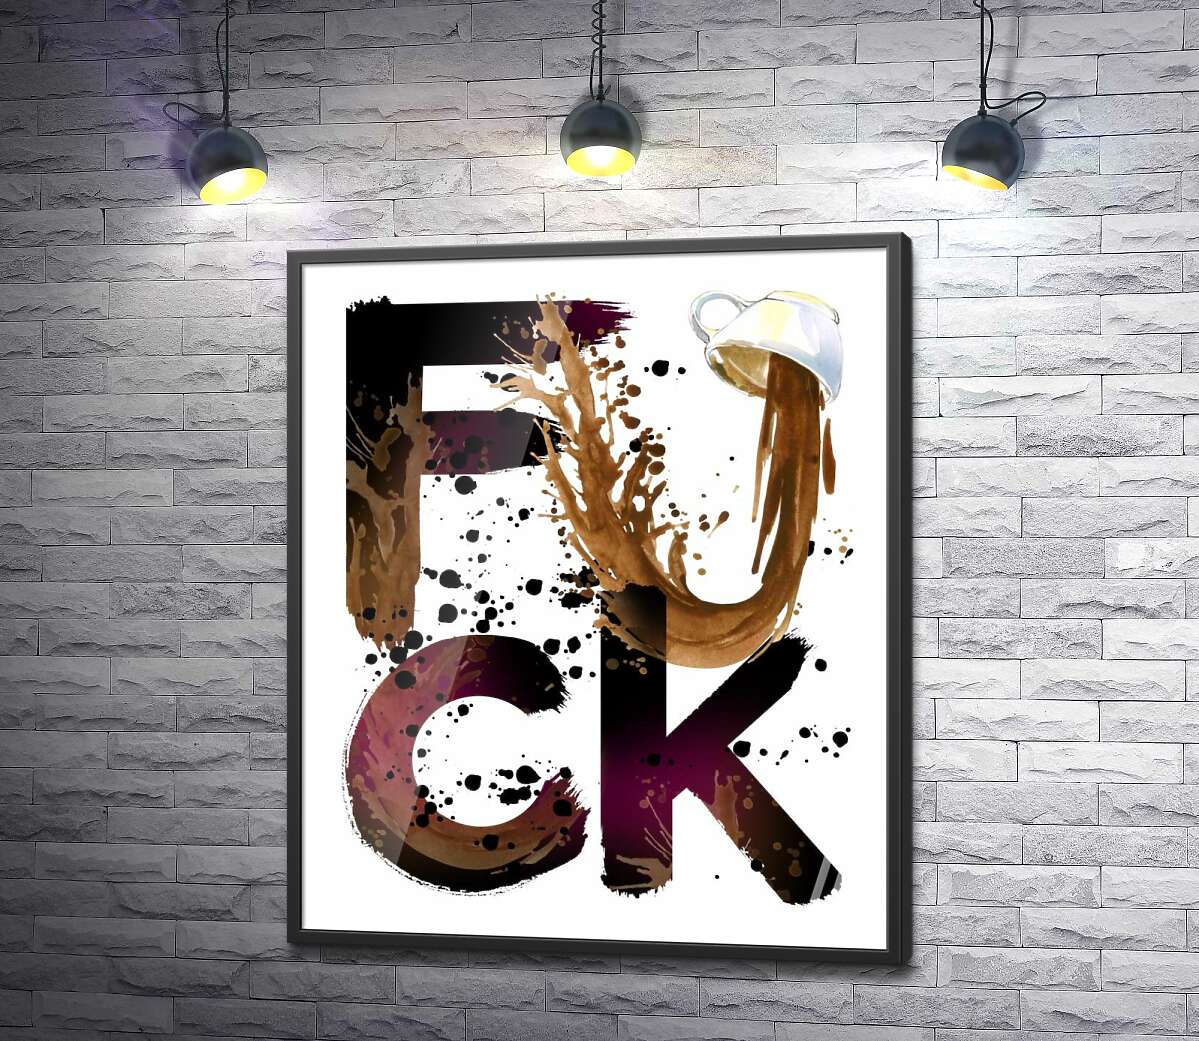 постер Чашка кофе вылилась на слово "fuck"